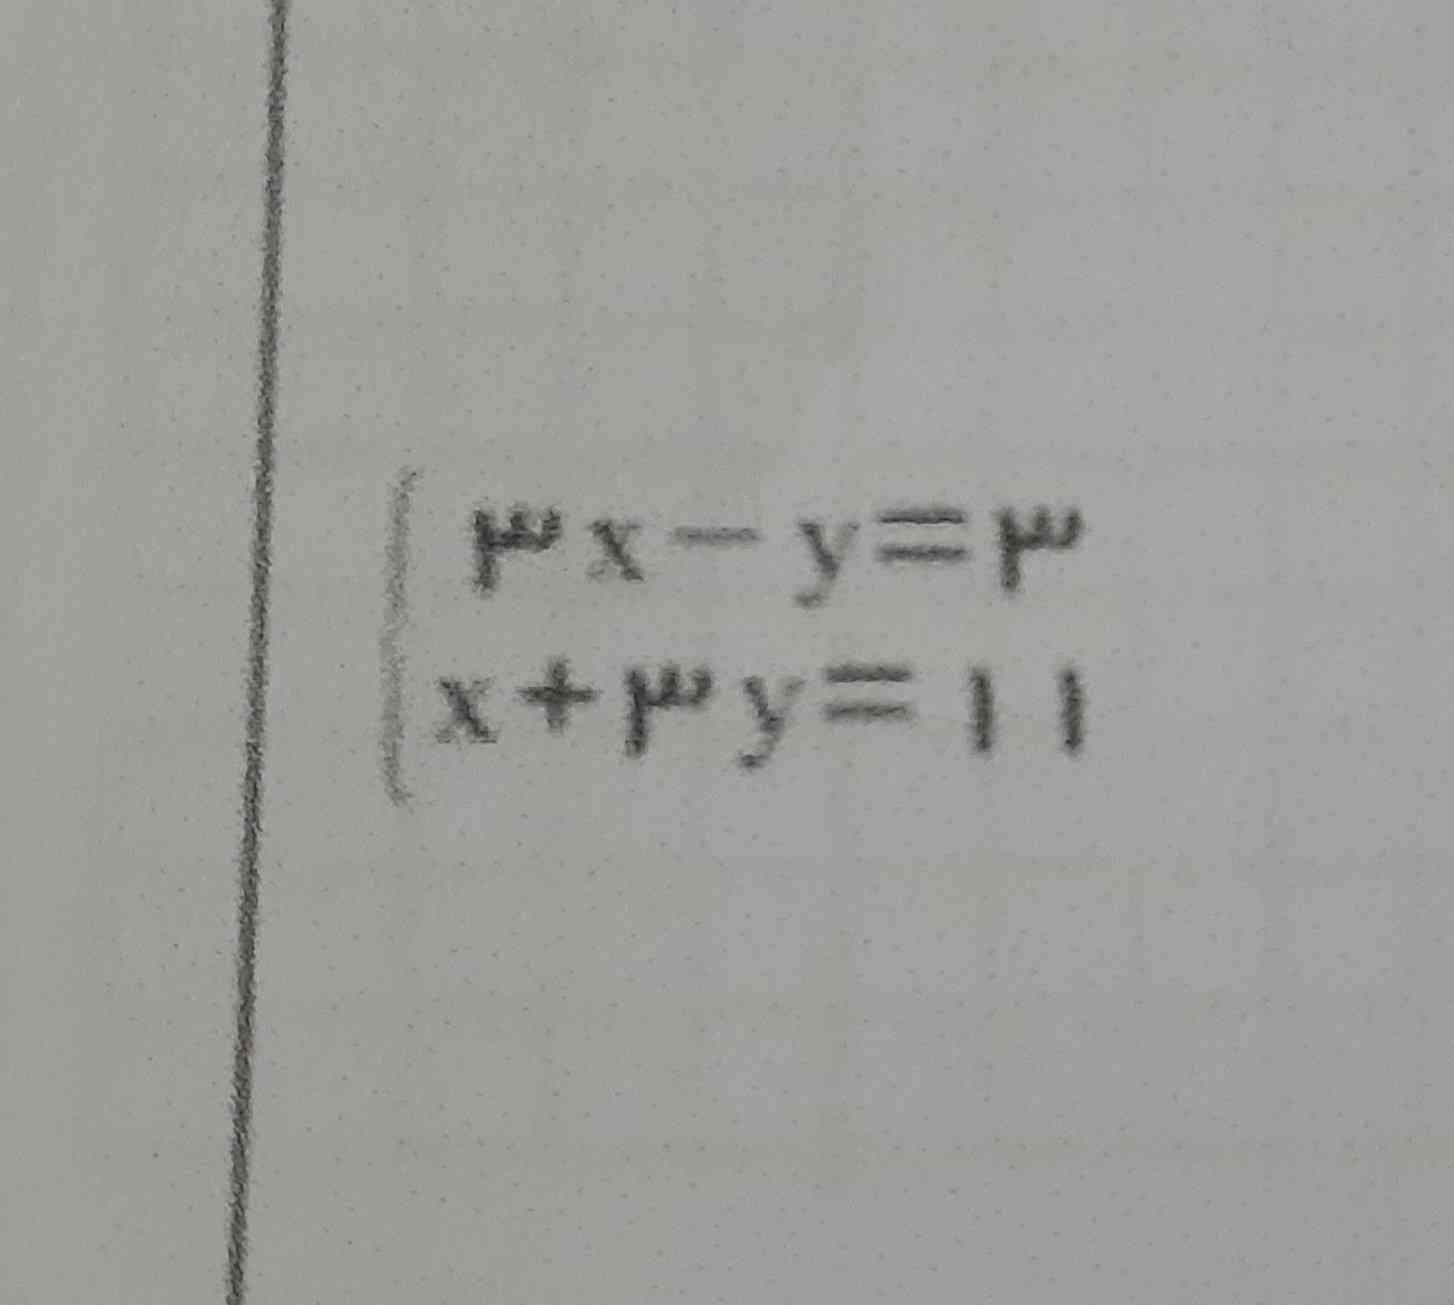 بچه ها لطفا این معادله رو به روش حذفی واسه من حل کنید فقط سریع لطفا 
معرکه میزنم